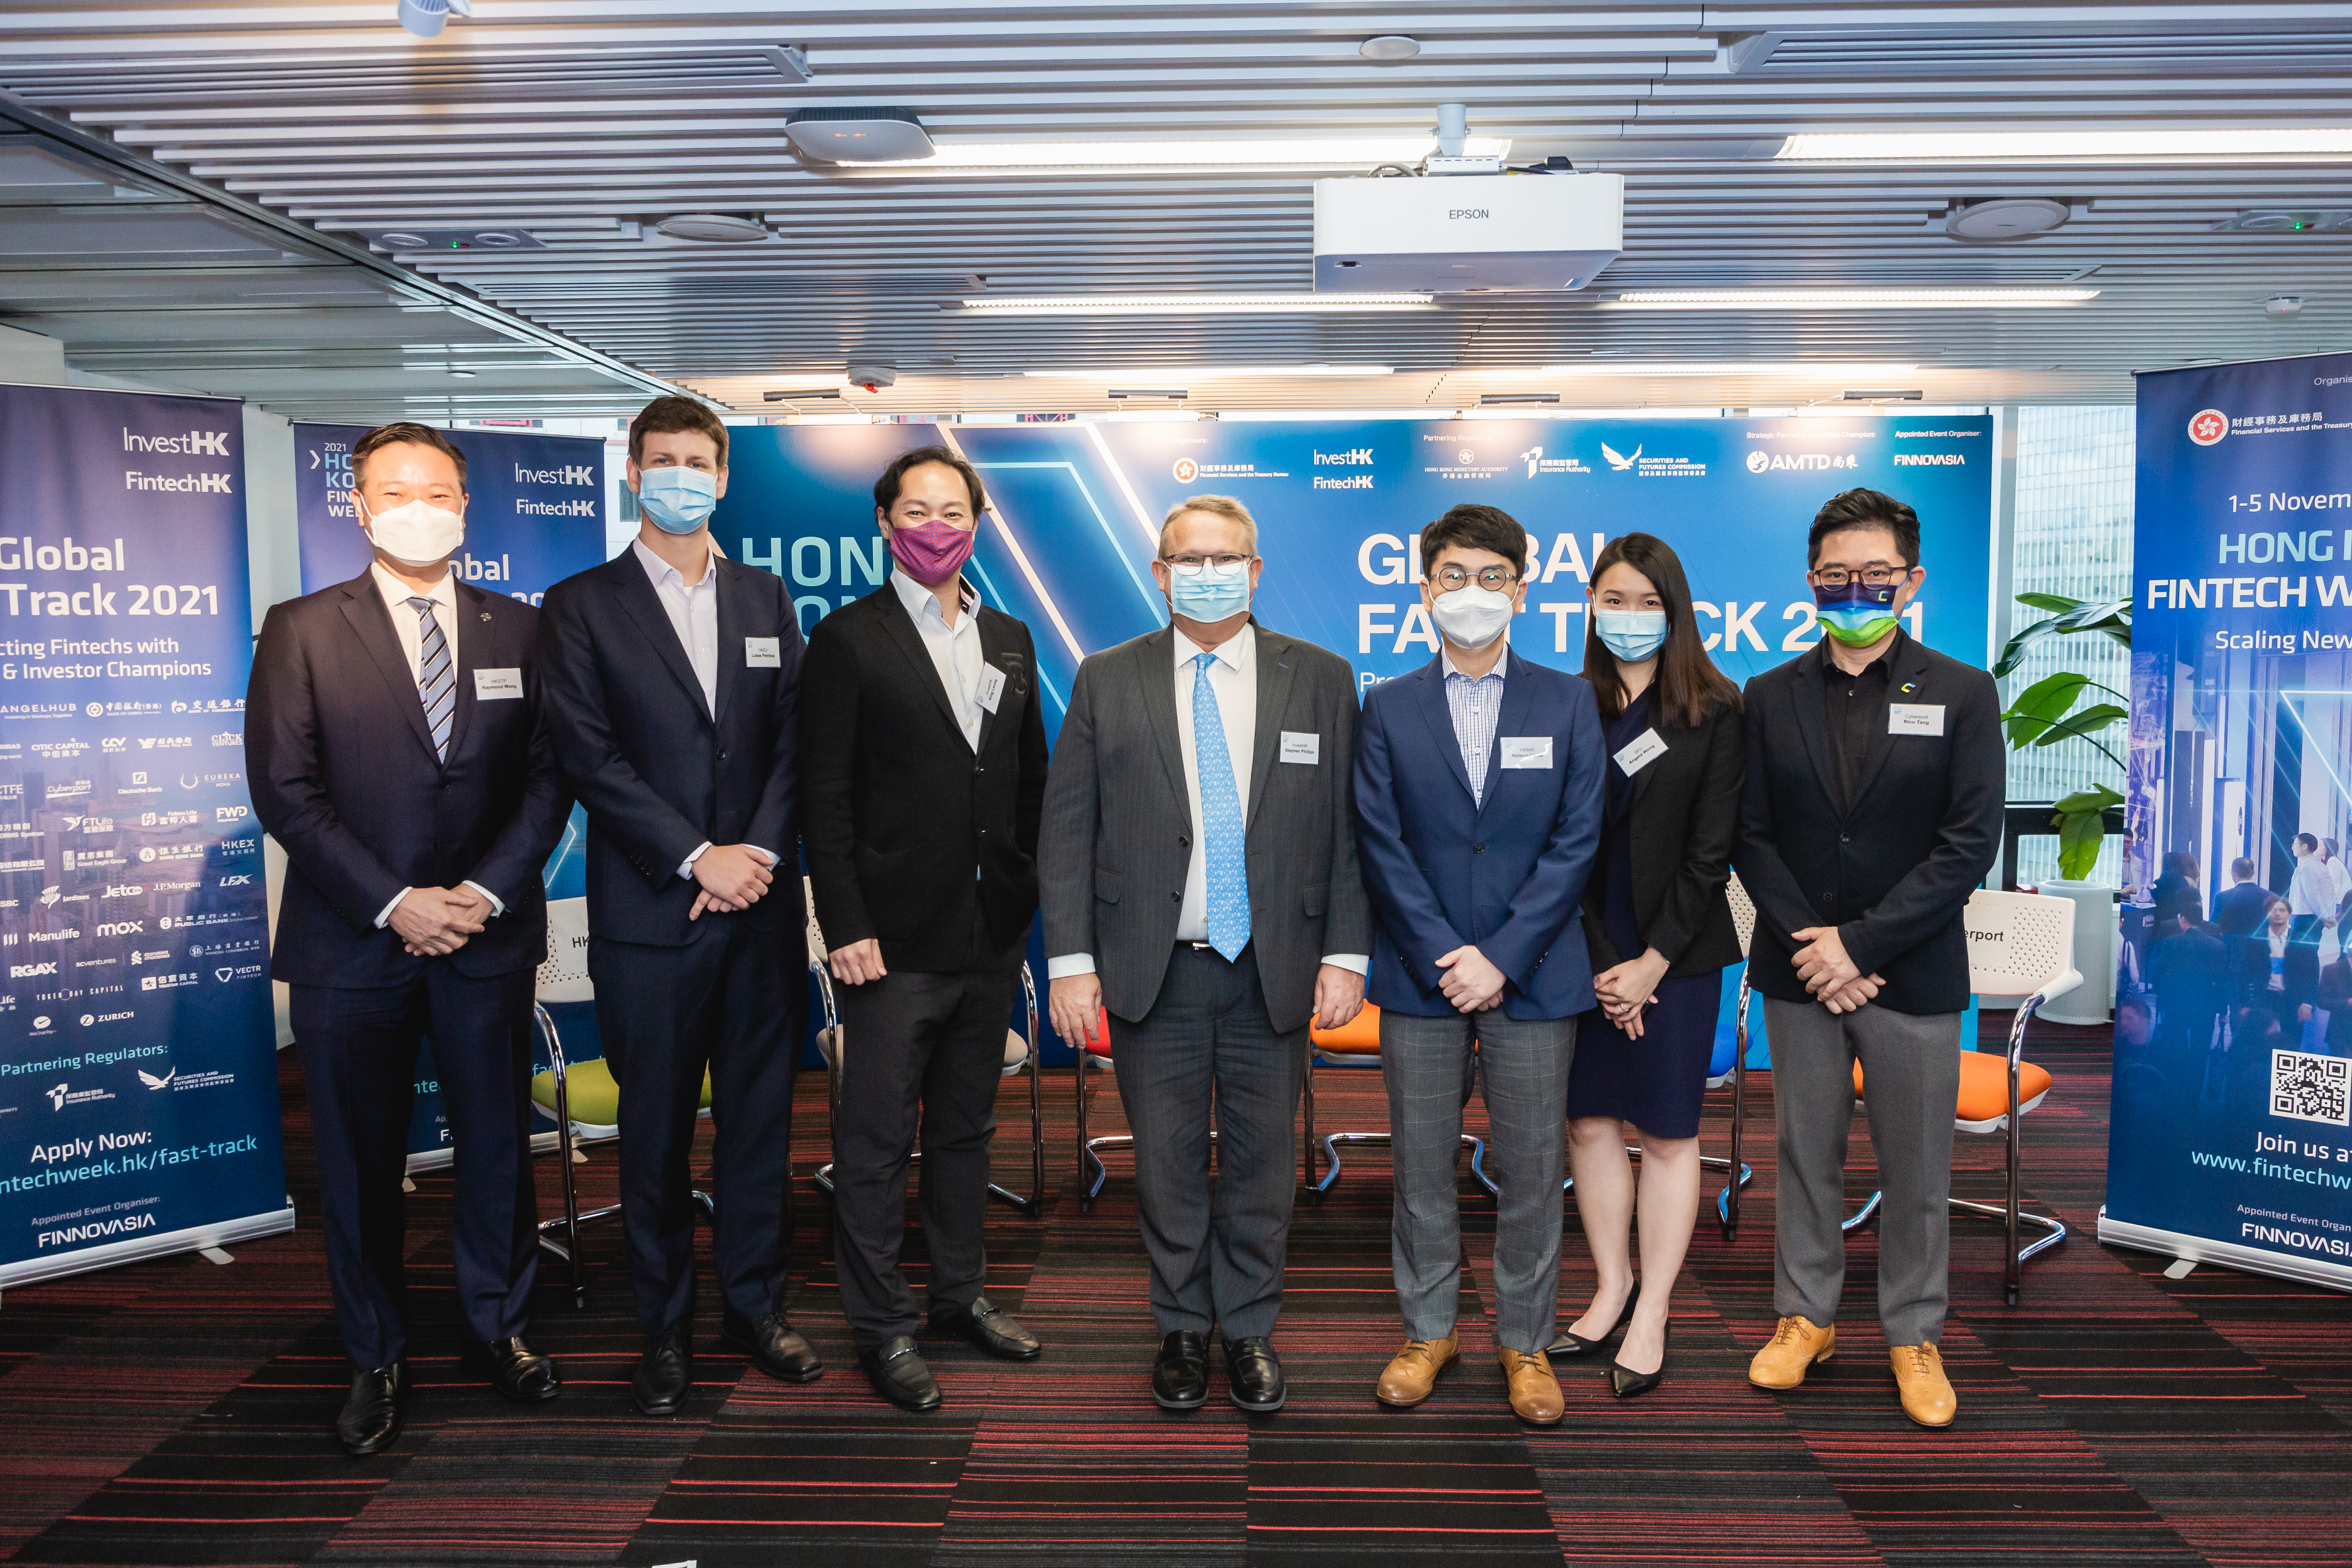 投資推廣署推出2021全球Fast Track計劃助金融科技公司拓展香港及以外商機